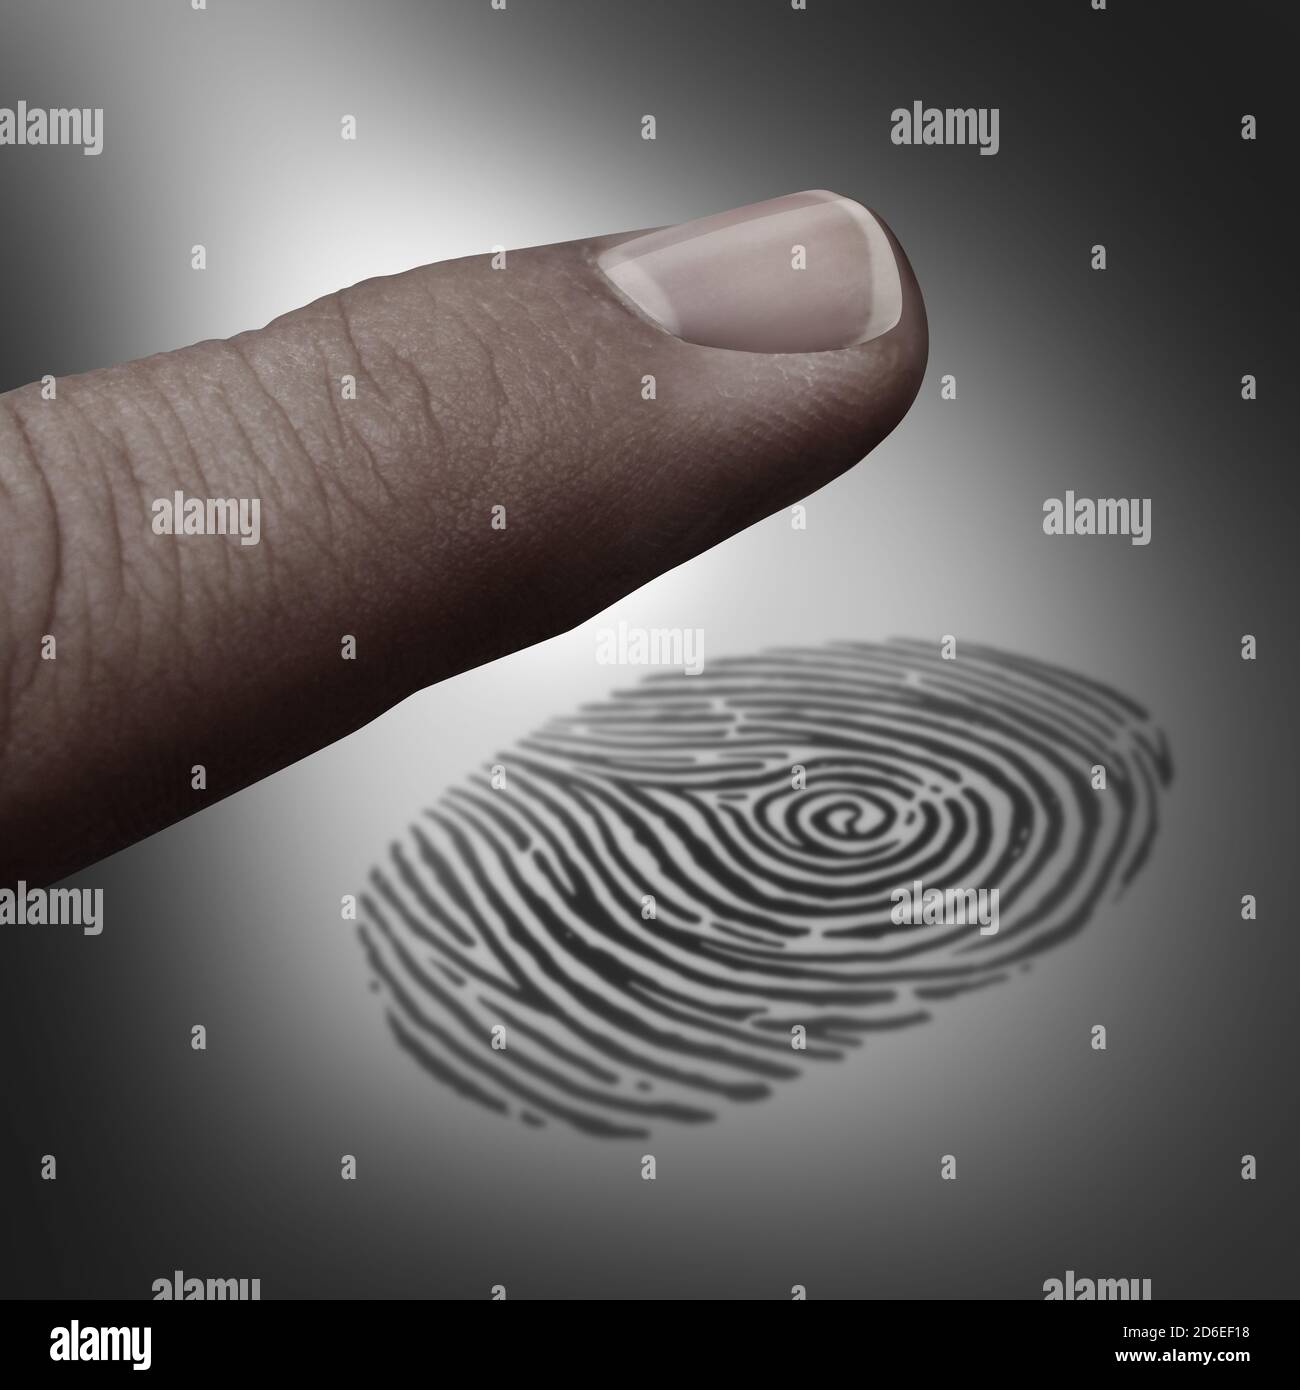 Identitätskonzept Fingerabdruck biometrische Technologie oder Wähler-ID in einem 3D-Illustration-Stil. Stockfoto